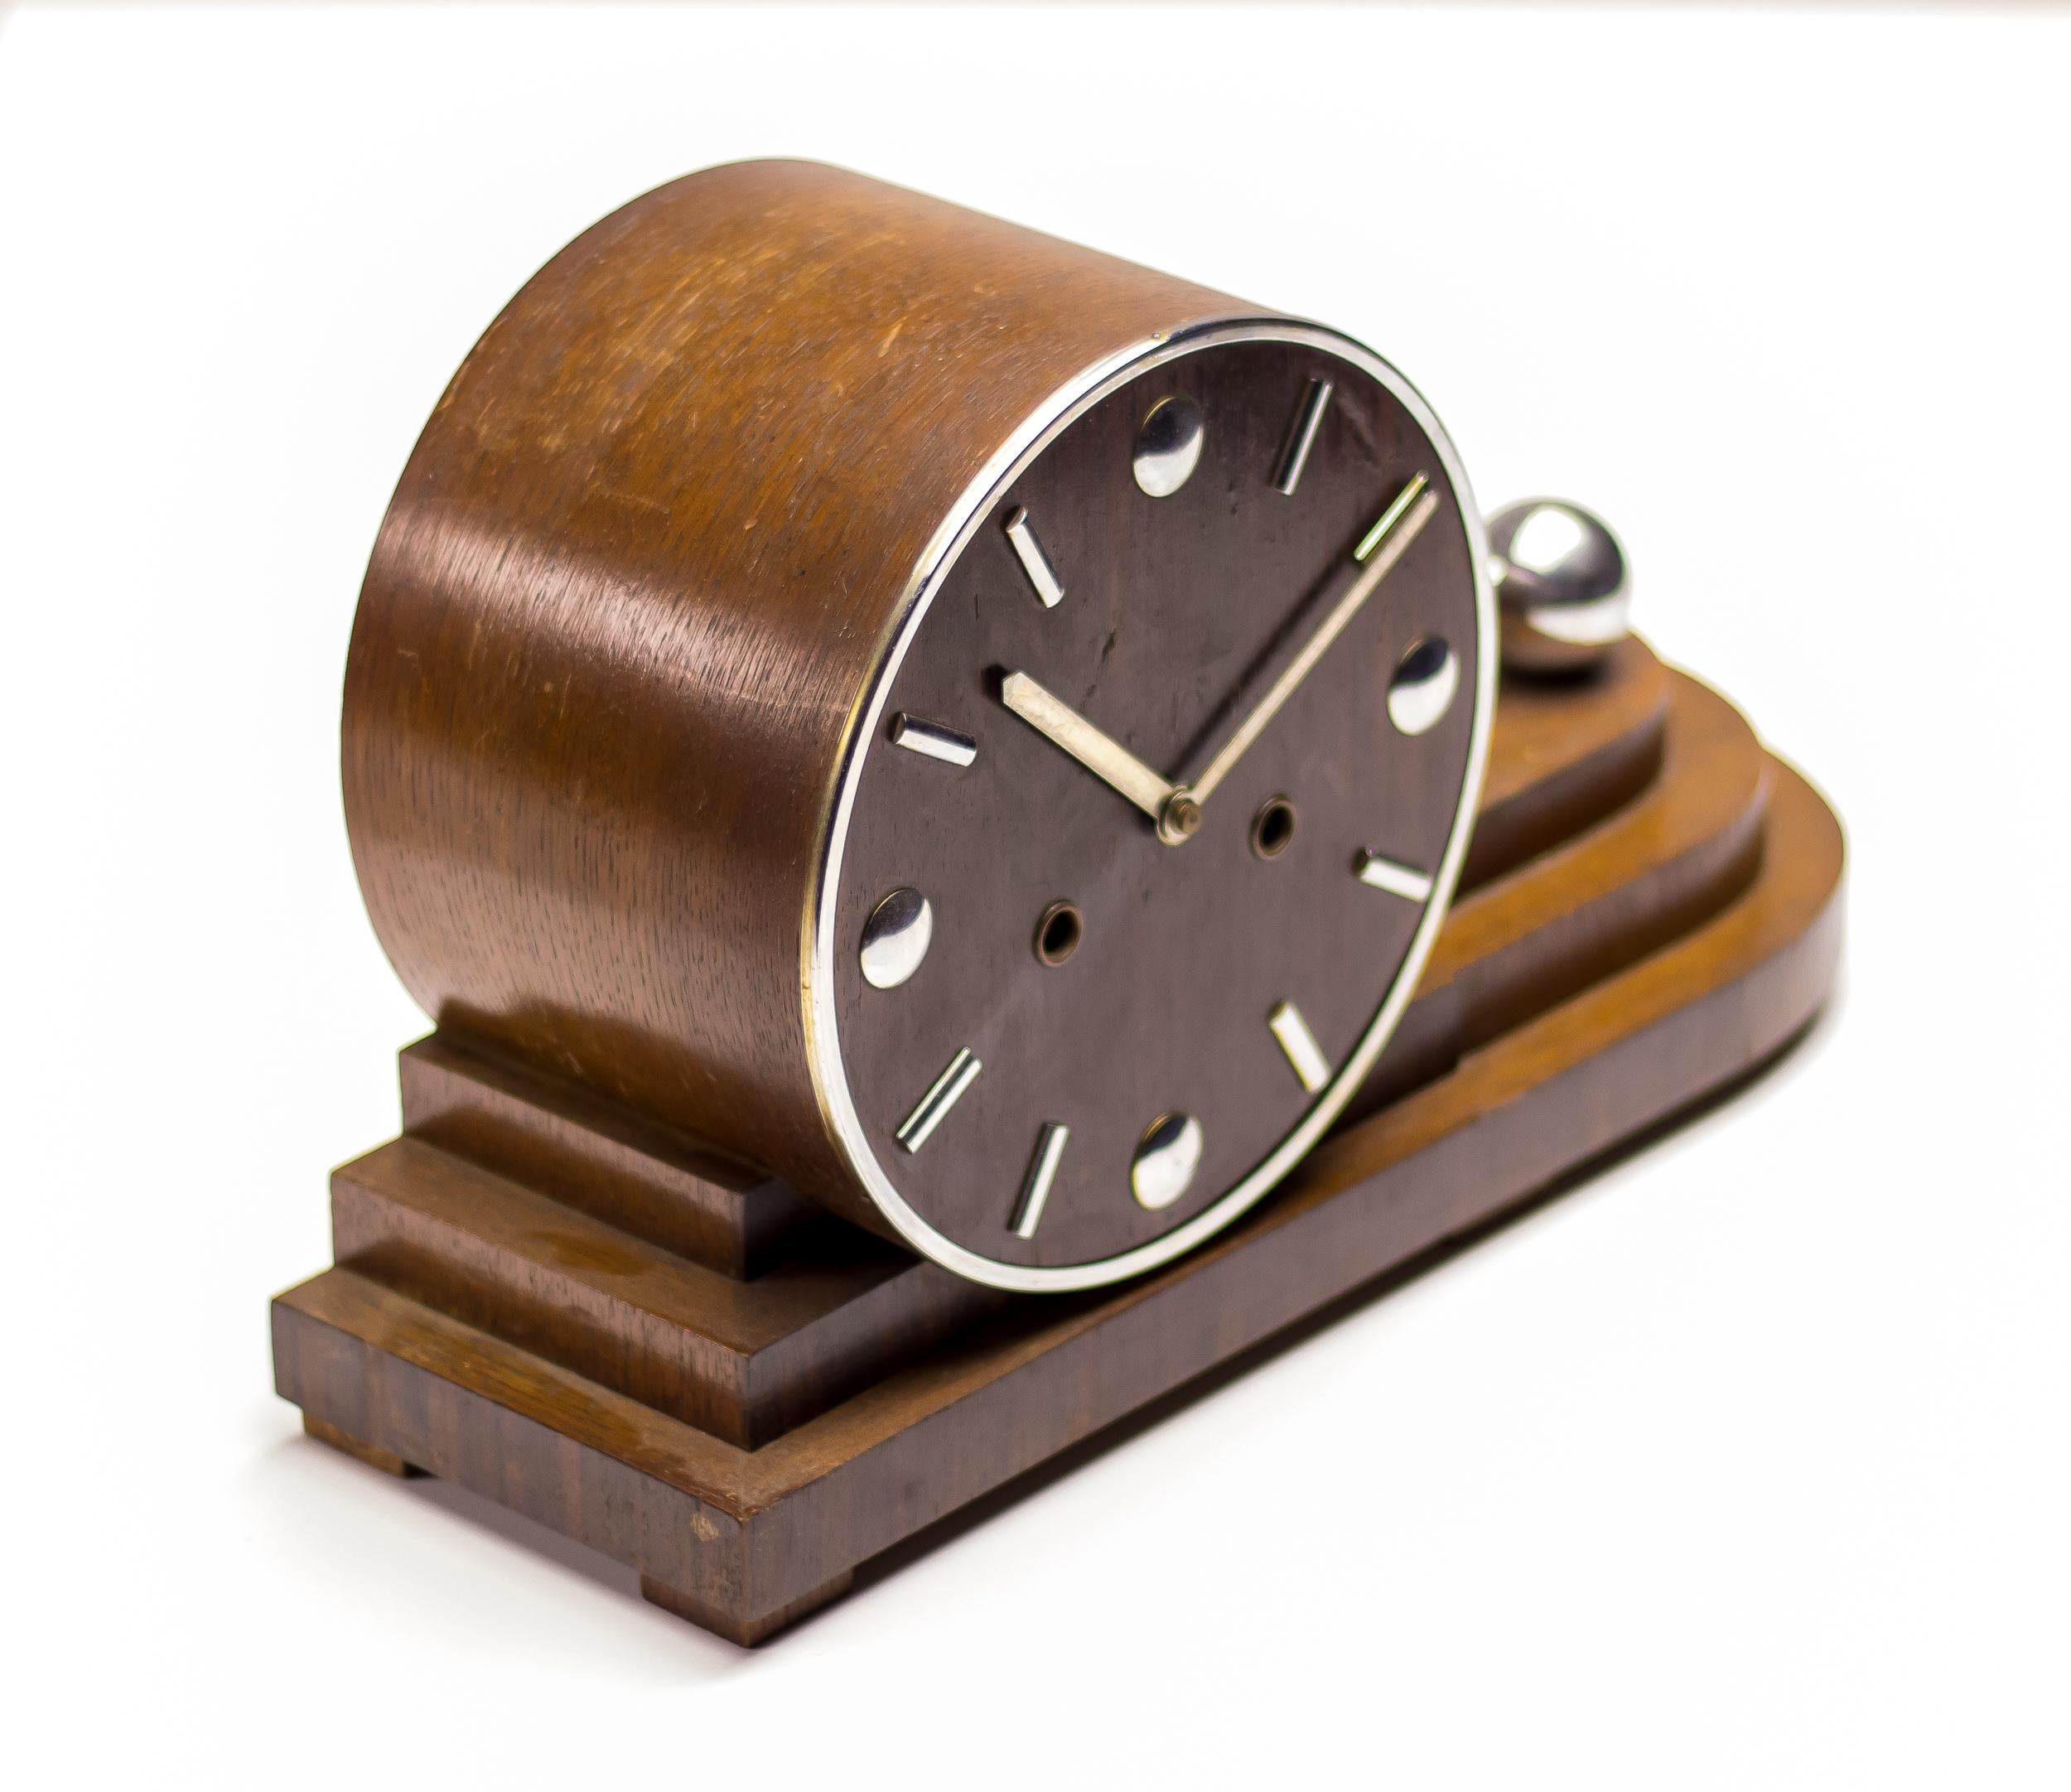 Horloge moderniste des années 1920 en Macassar et chrome.
Cette horloge de cheminée de l'